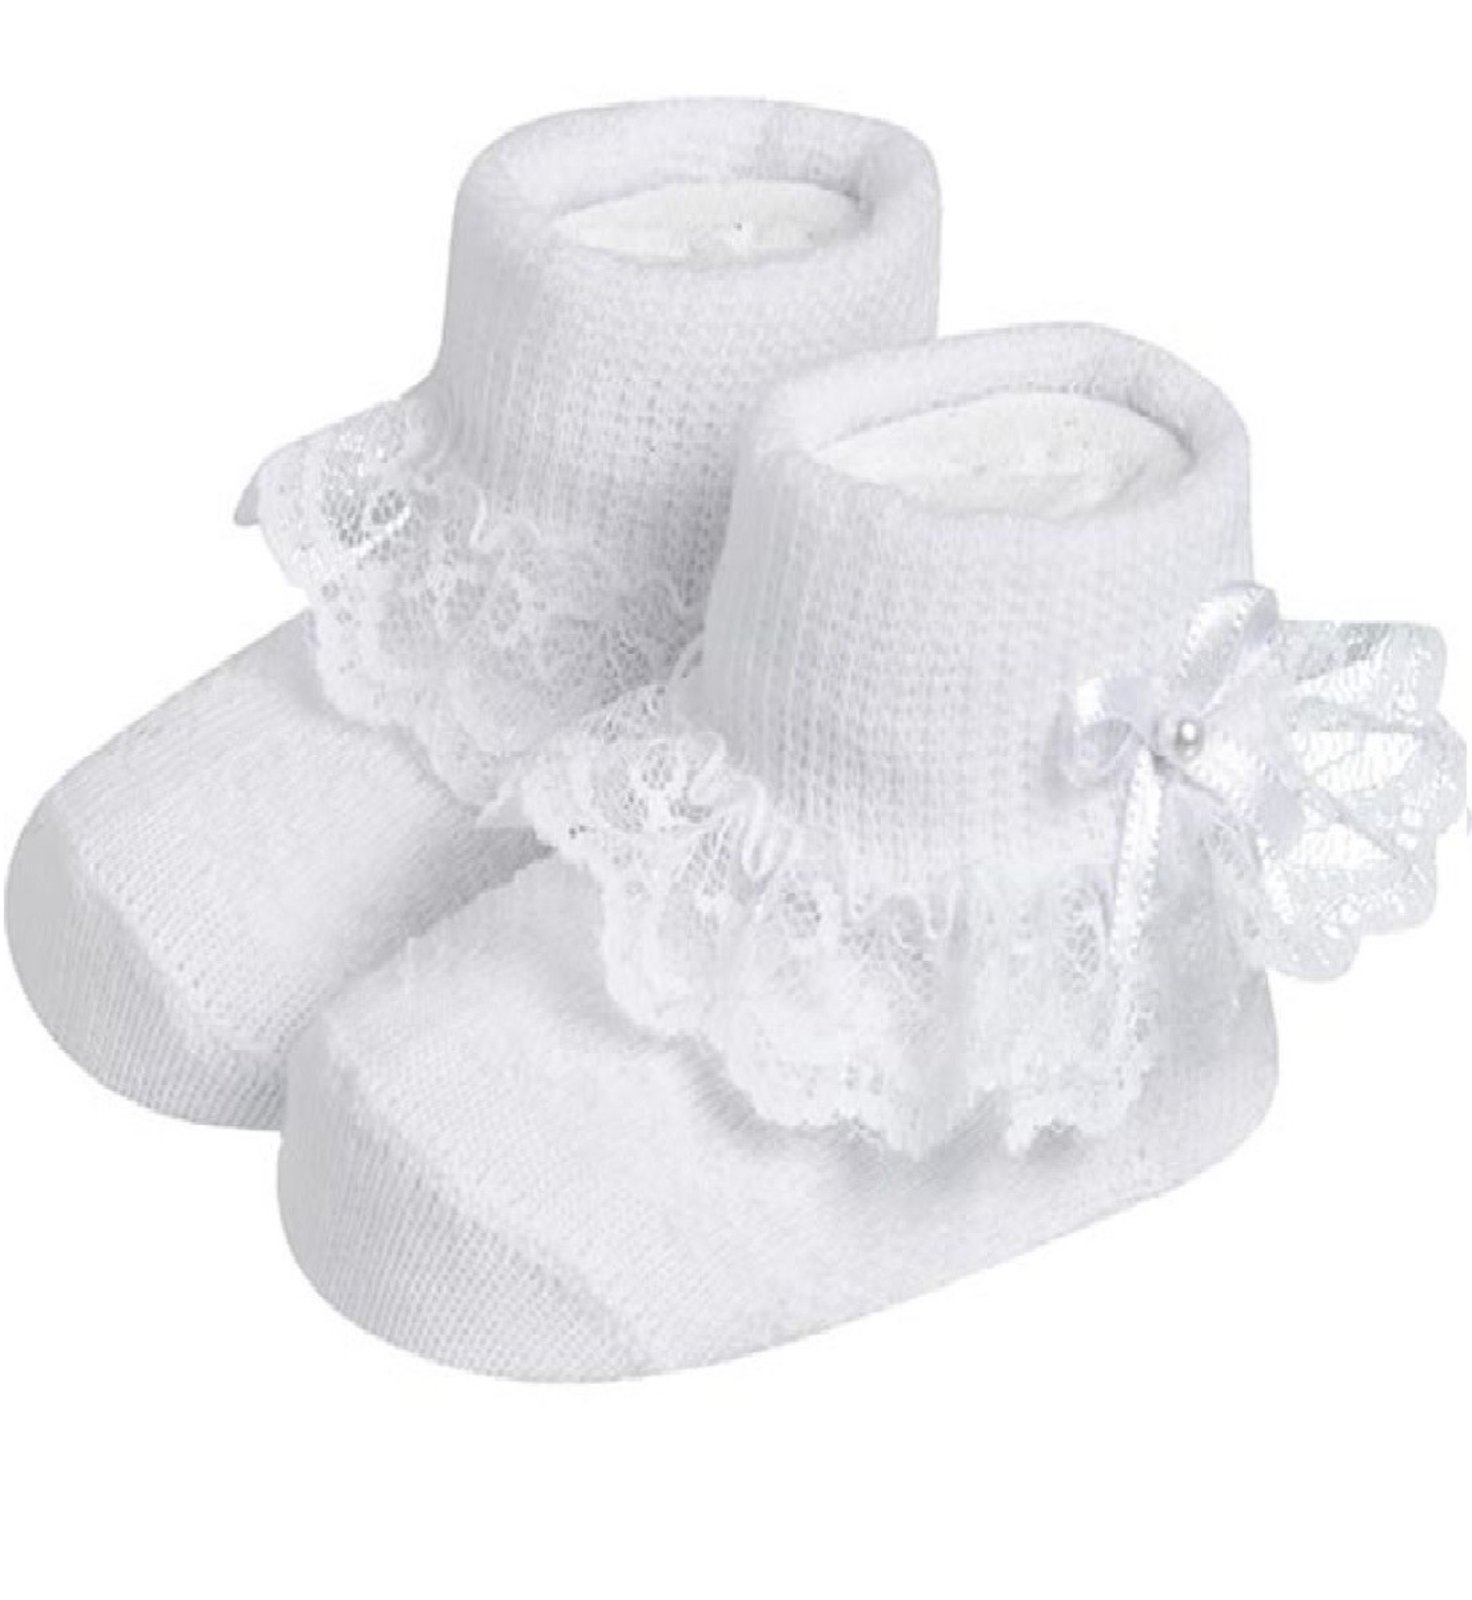 sapatinhos de meia para recem nascido